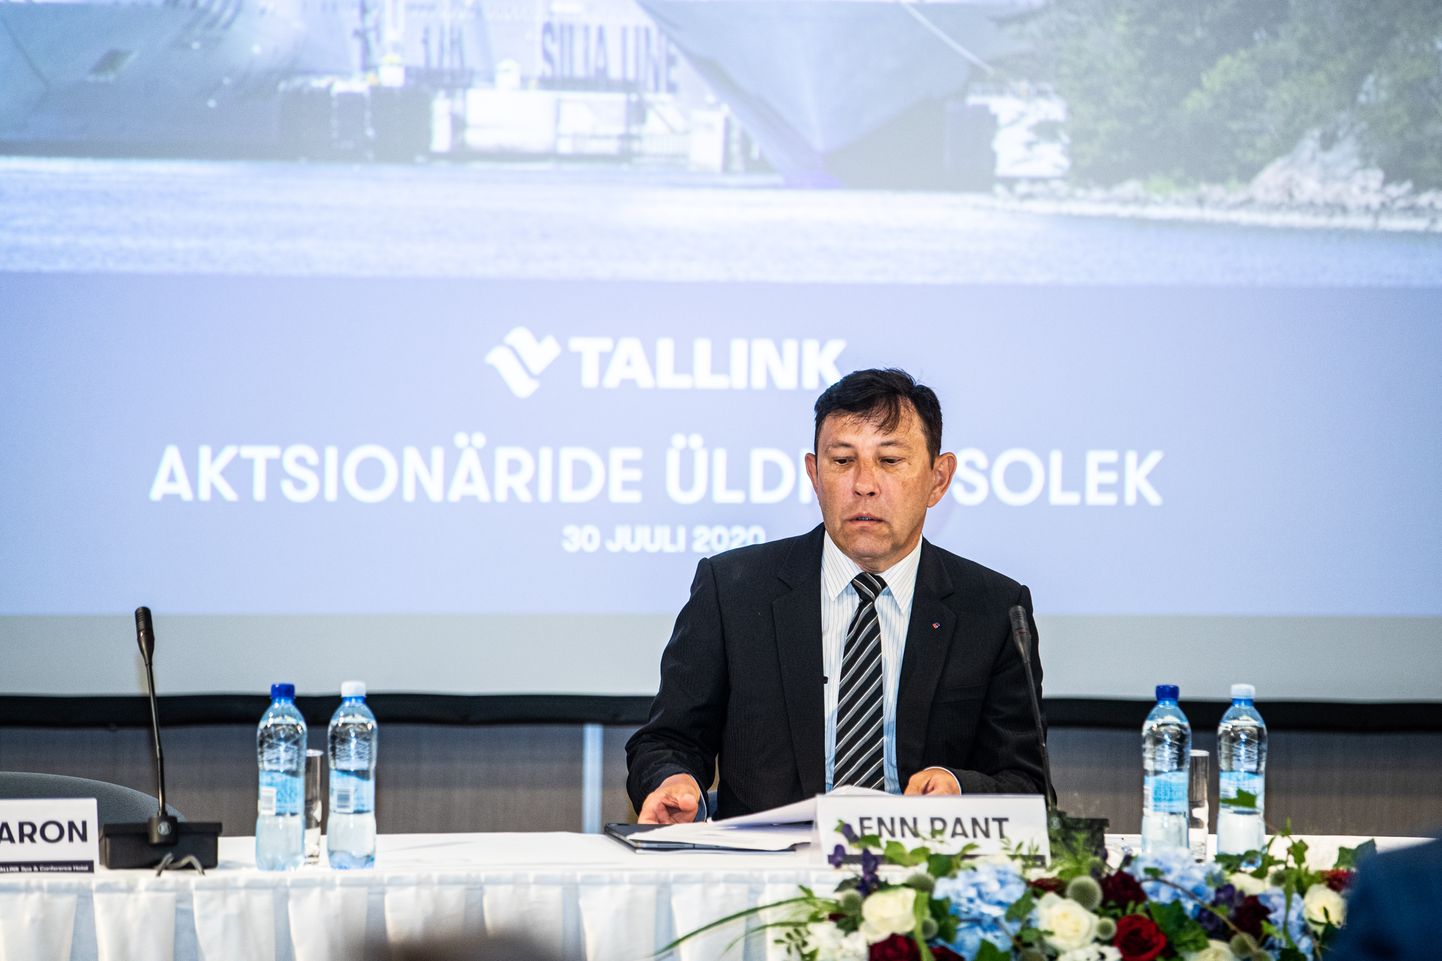 Tallinki nõukogu esimees Enn Pant kontrollib otse ja Infortari osaluse akudu 11,9 protsenti ettevõtte aktsiatest.